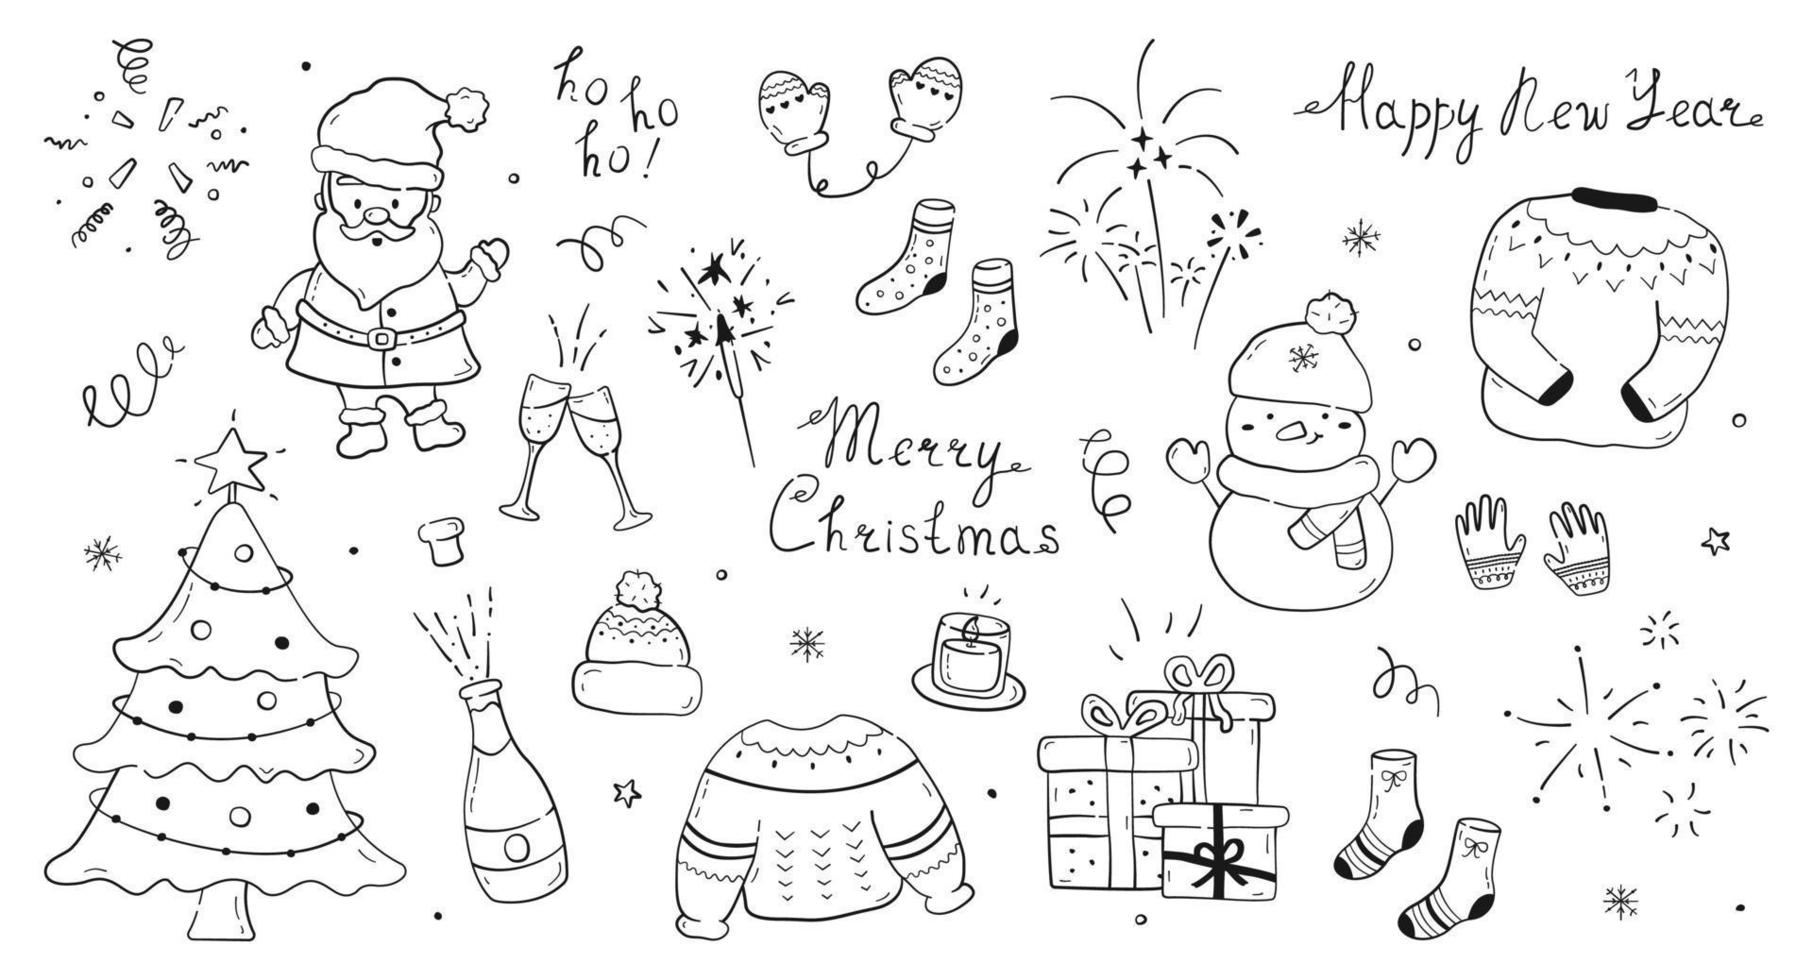 gran colección de elementos y letras de año nuevo dibujados a mano. lindos garabatos de personajes navideños y árboles, champán, bengalas, fuegos artificiales, confeti, velas, cajas de regalo y ropa de invierno. vector